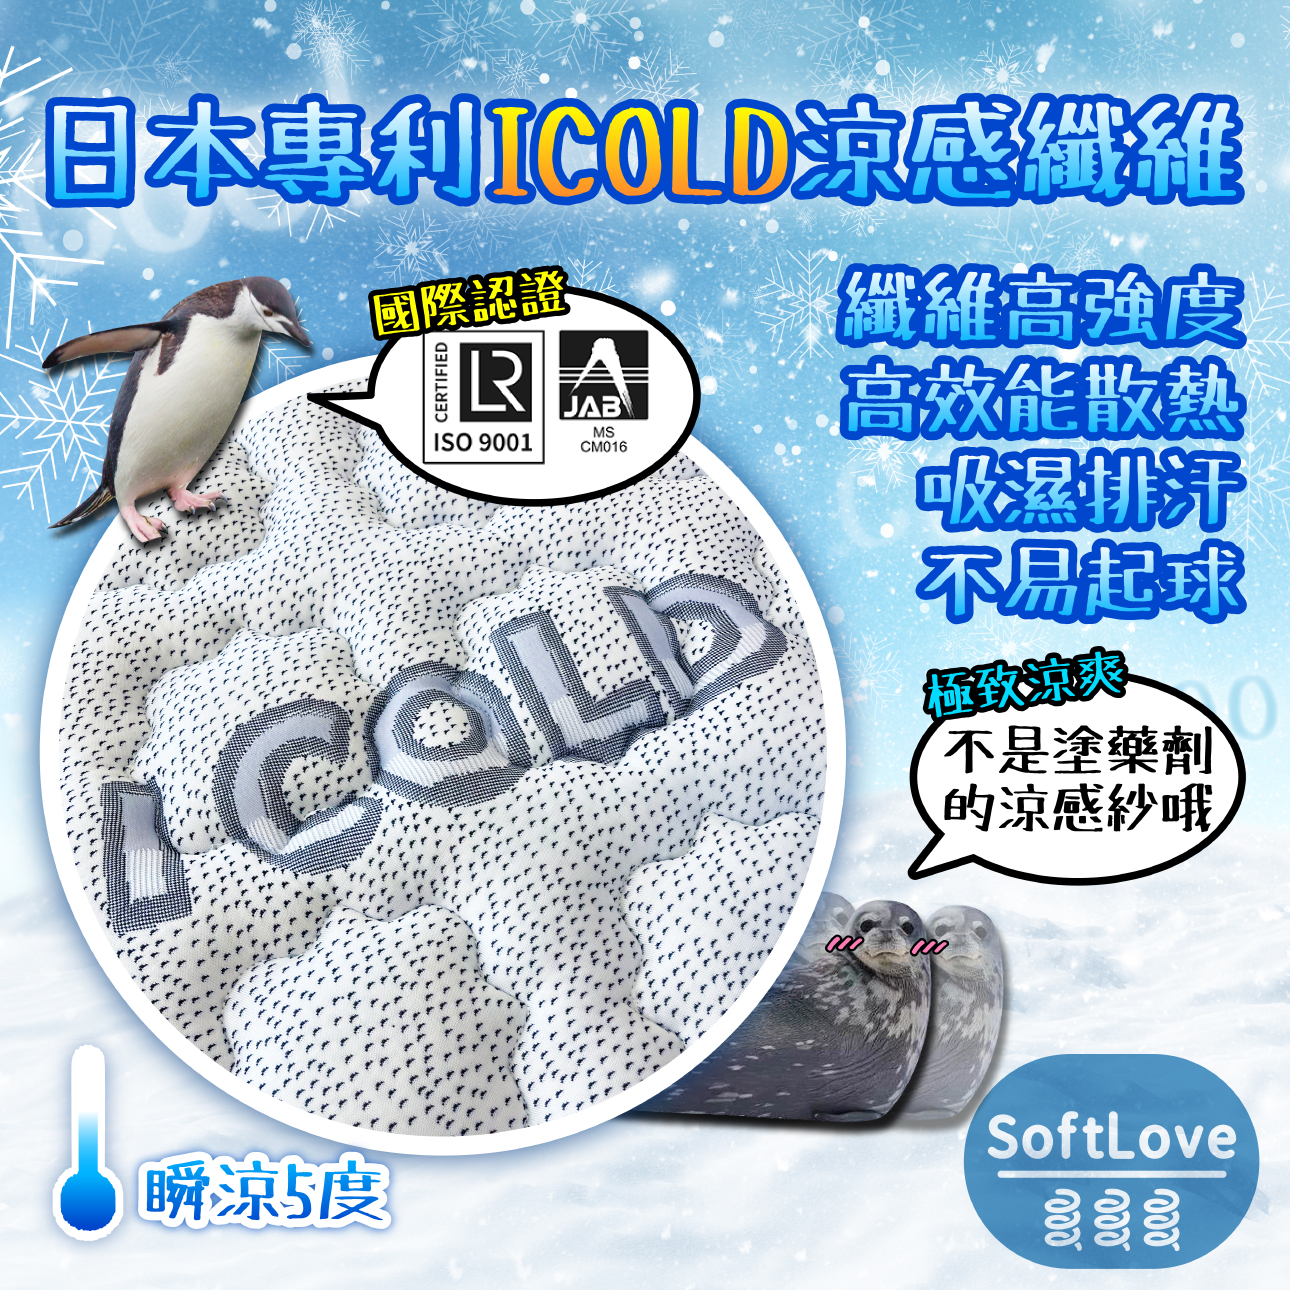 日本專利ICOLD涼感乳膠獨立筒床墊